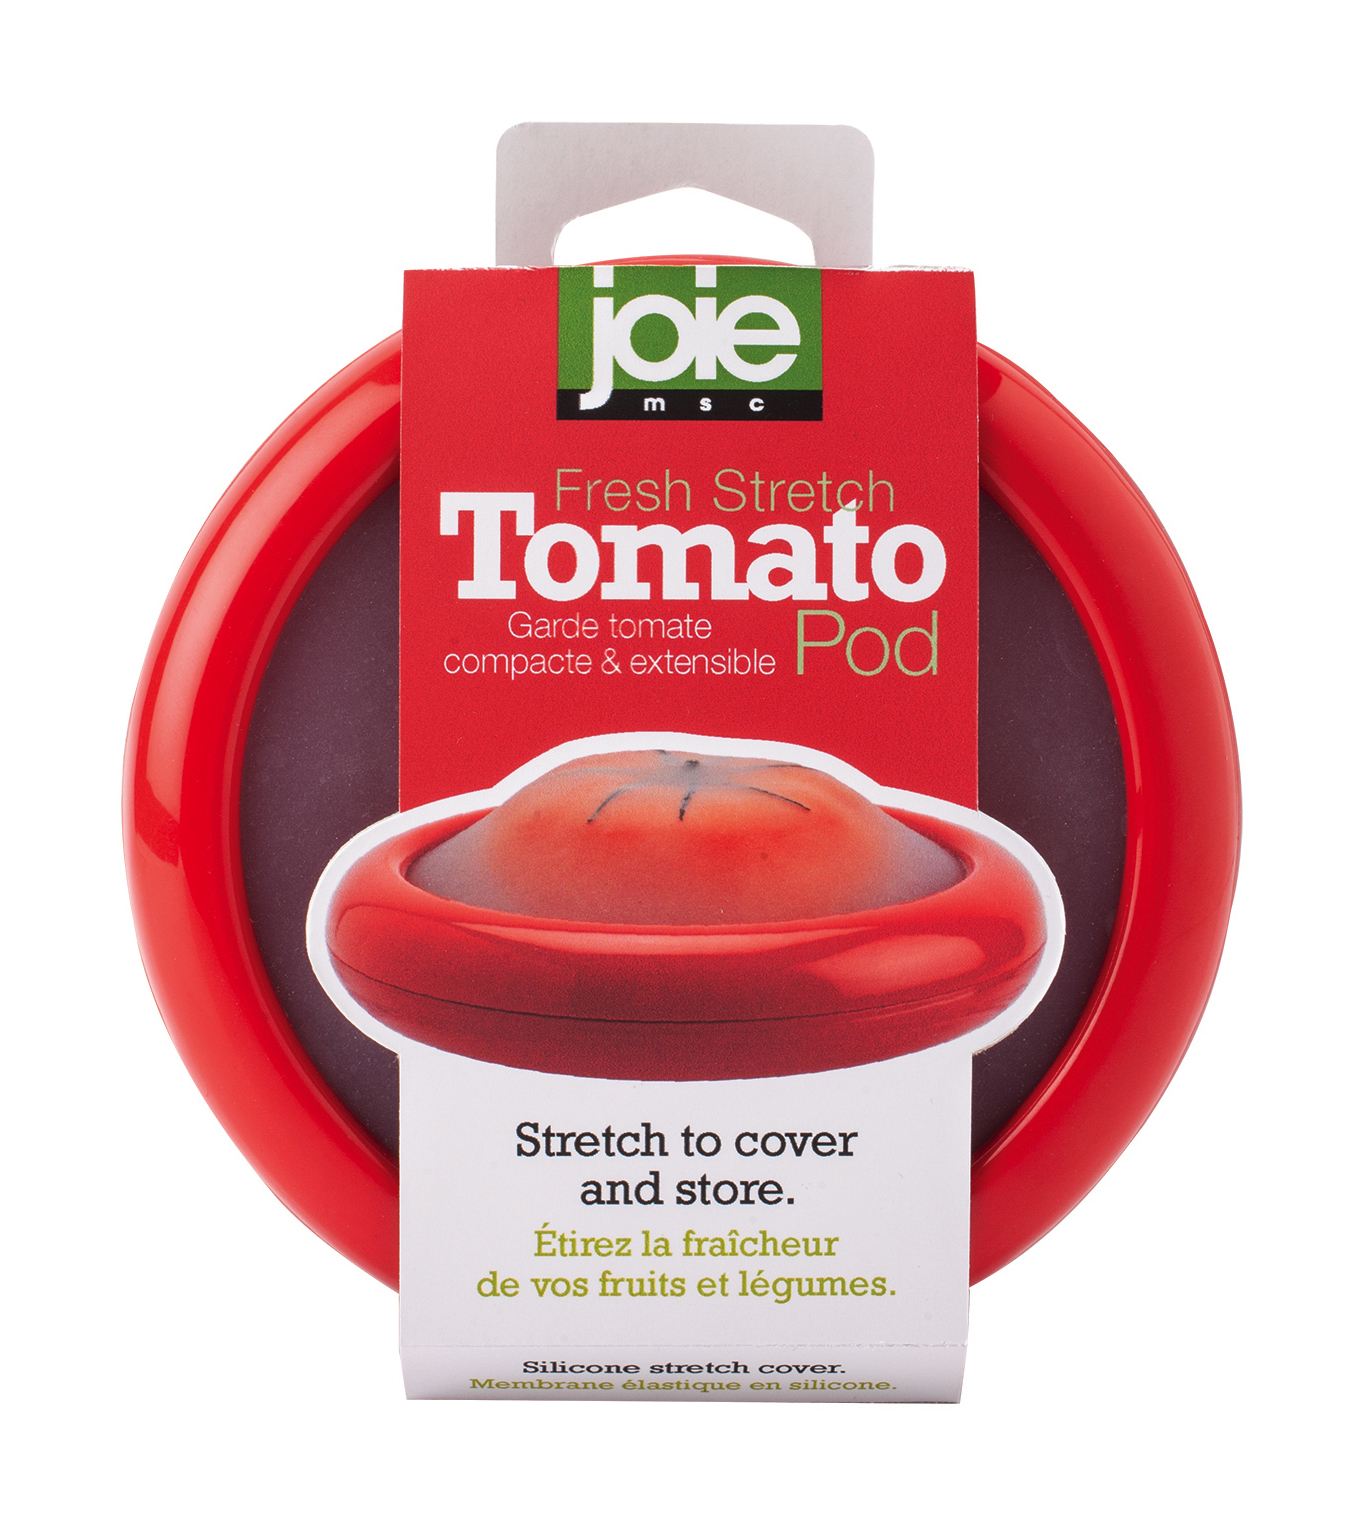 Visuel deBoîte pour TOMATE - "Stretch Pod", Joie La boîte pour TOMATE "Stretch Pod" de Joie est une alliée de l’anti-gaspillage car elle permet de protéger au réfrigérateur les tomates entamées grâce à sa membrane élastique en silicone.